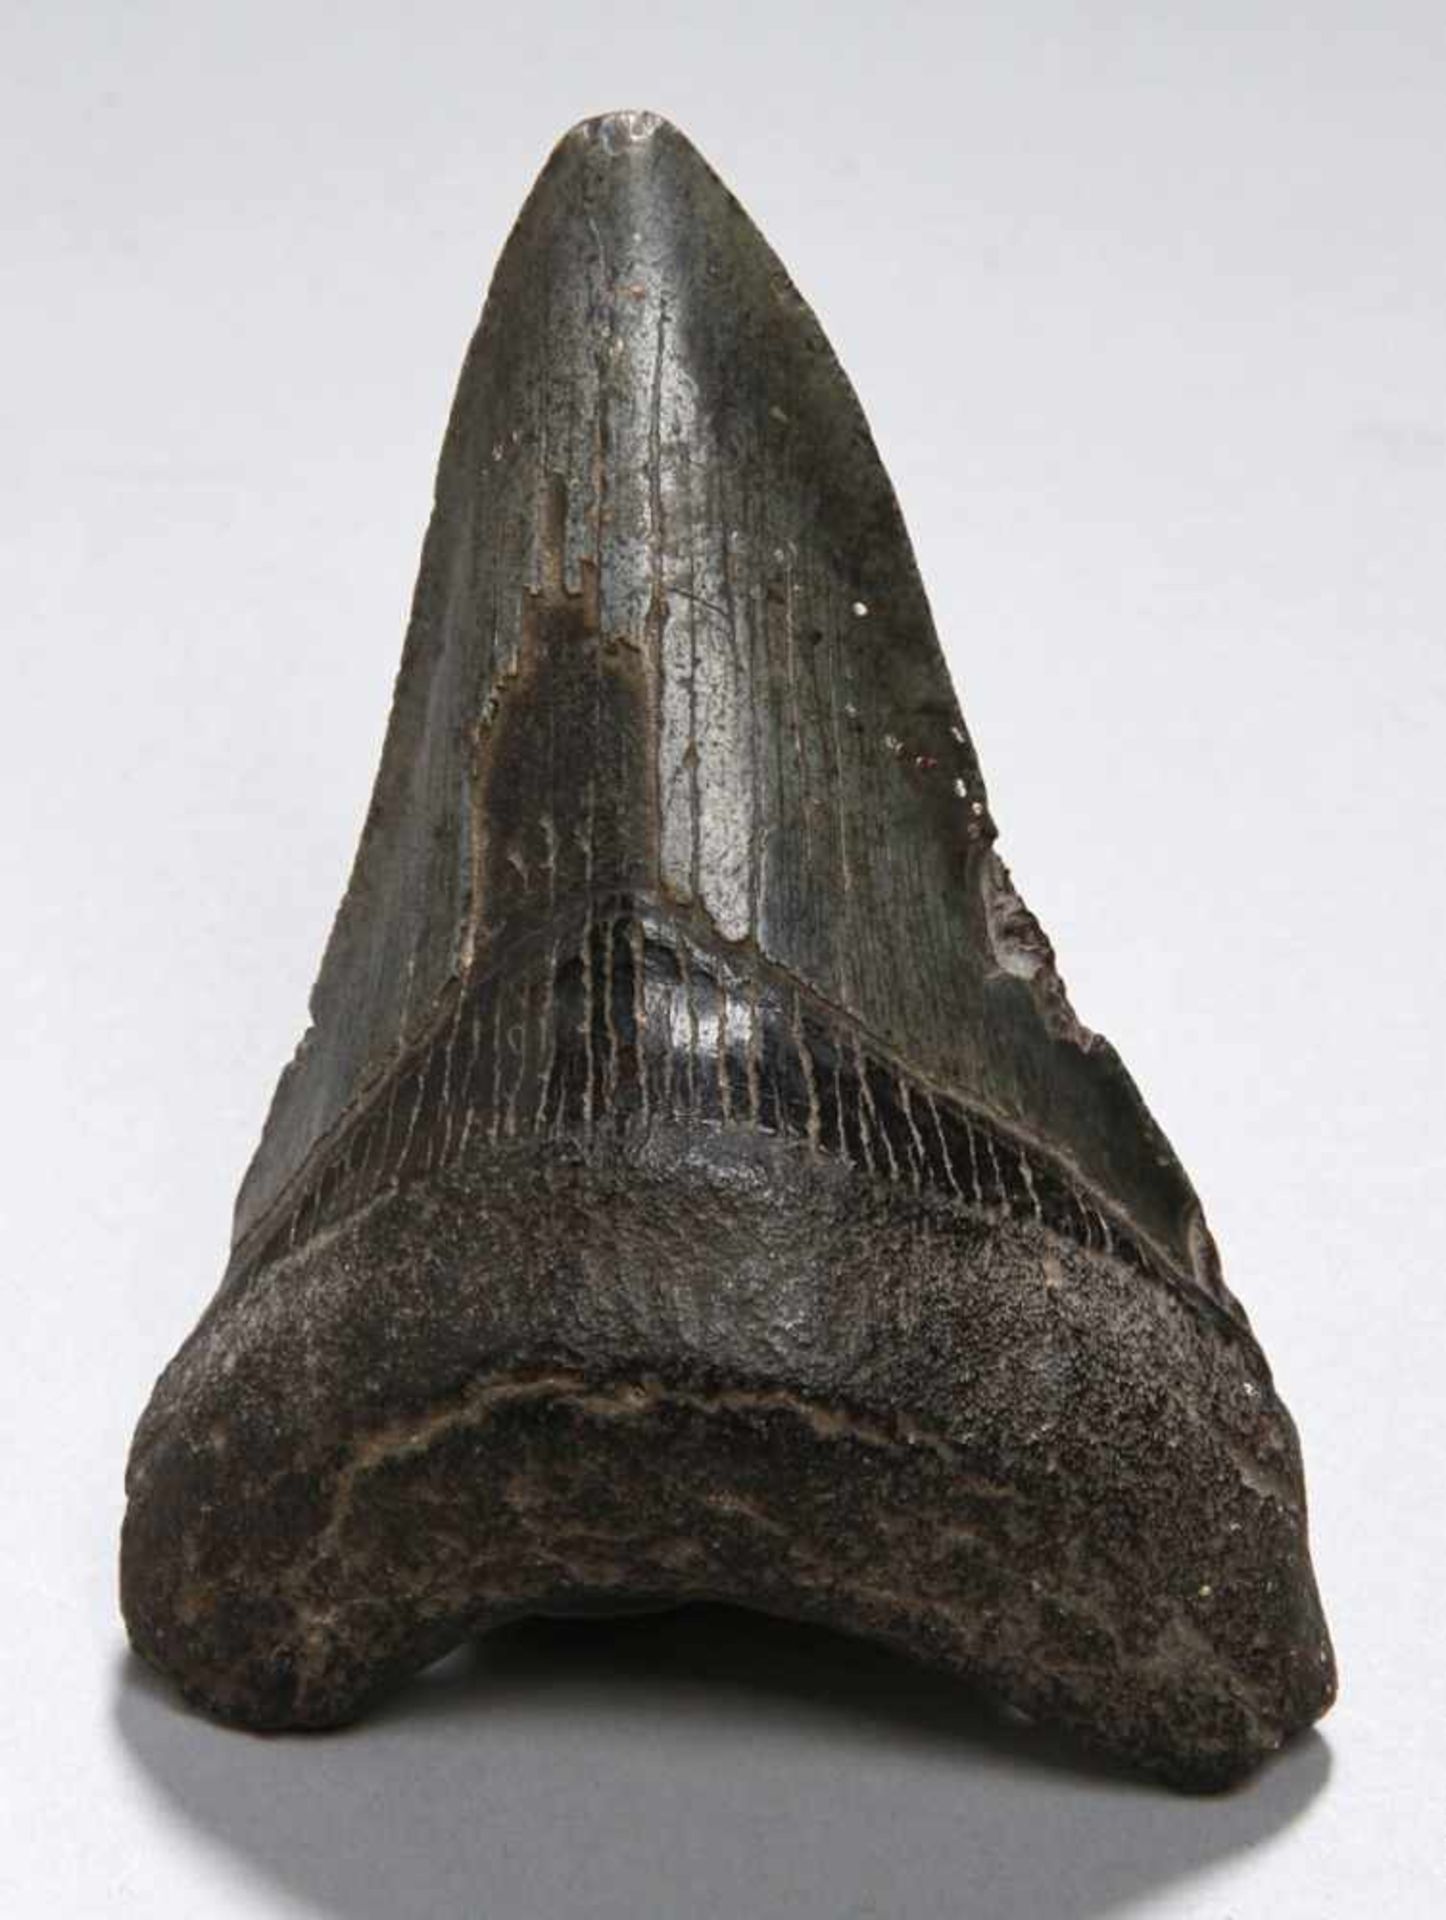 Versteinerter Haifischzahn, gebogte, spitz zulaufende Form mit dunkler Patina und feinerÄderung